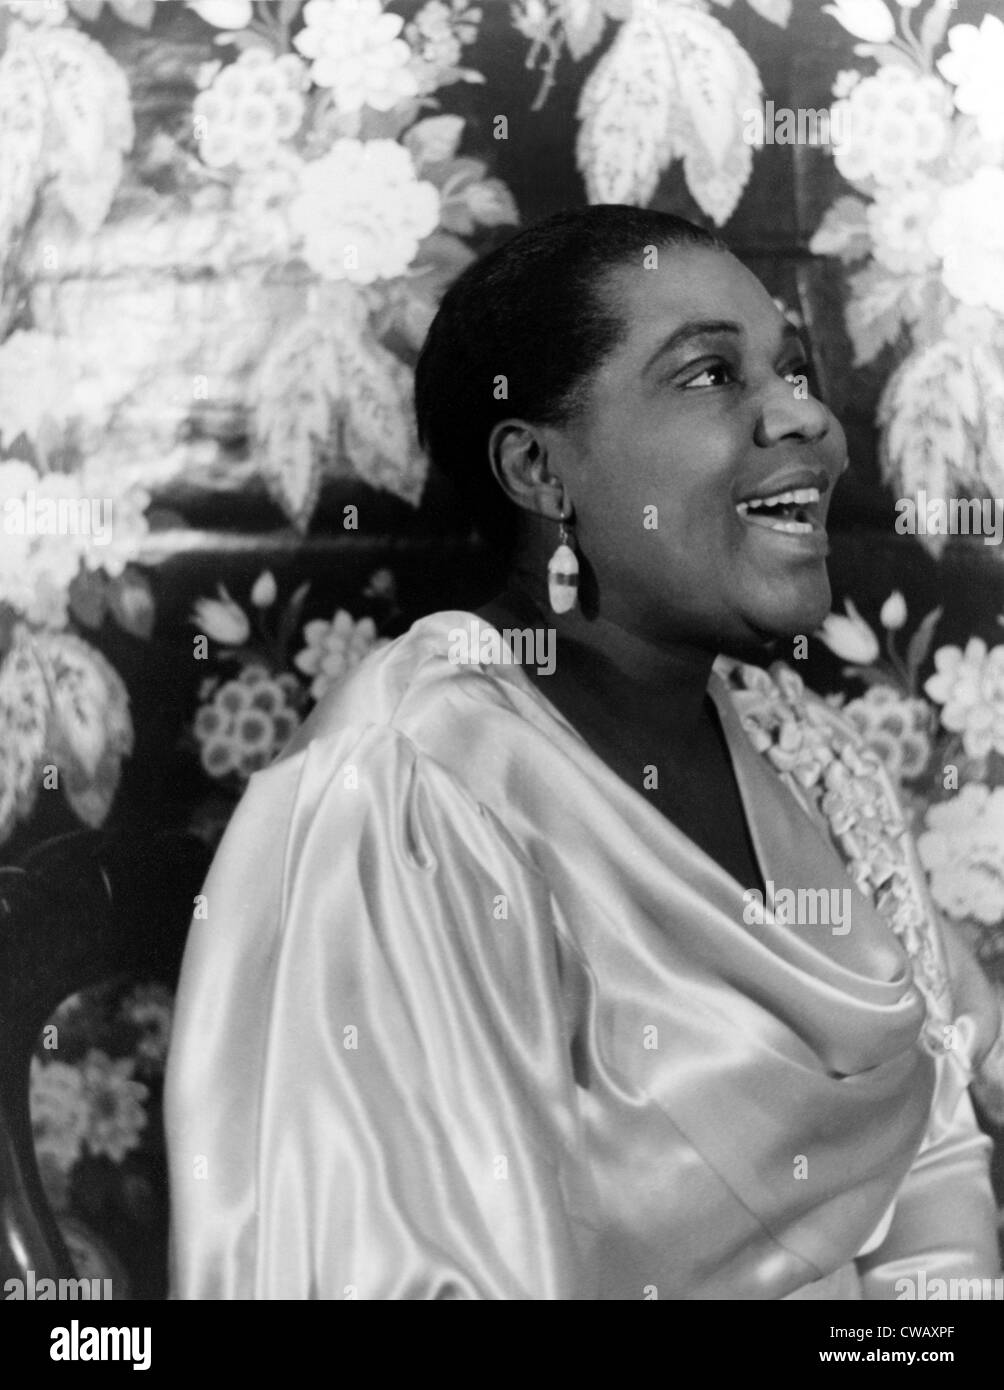 Bessie Smith, chanteur de blues américain, portrait par Carl Van Vechten, le 3 février 1936. Banque D'Images